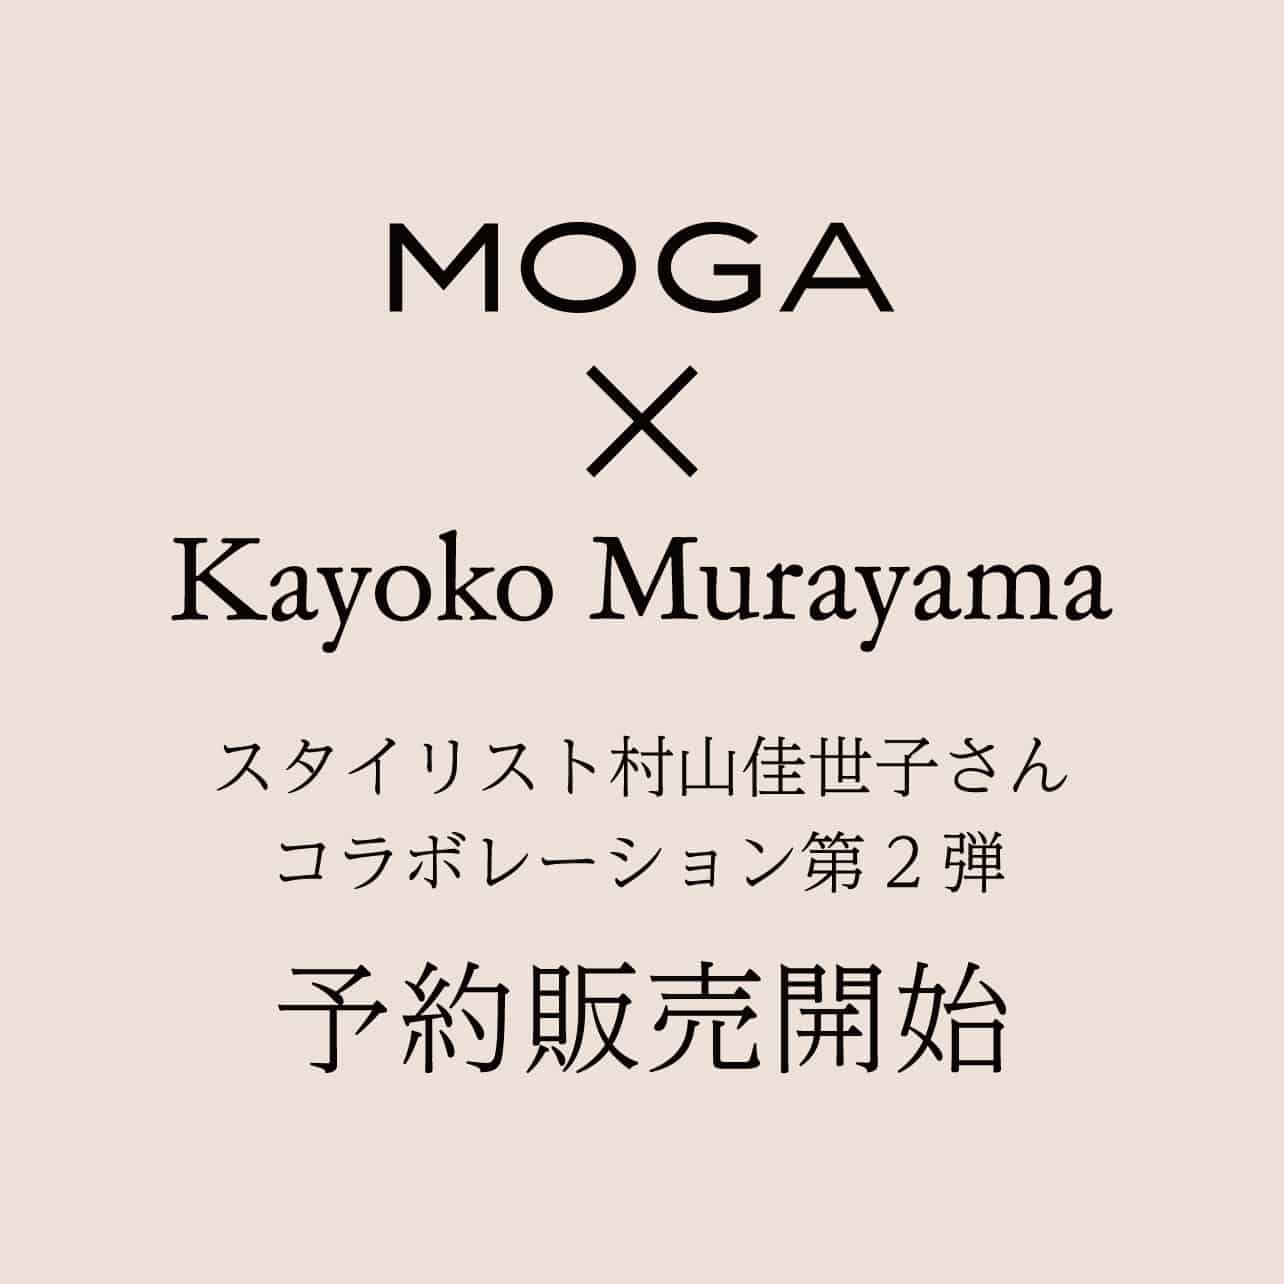 MOGA×Kayoko Murayama コラボレーション第2弾